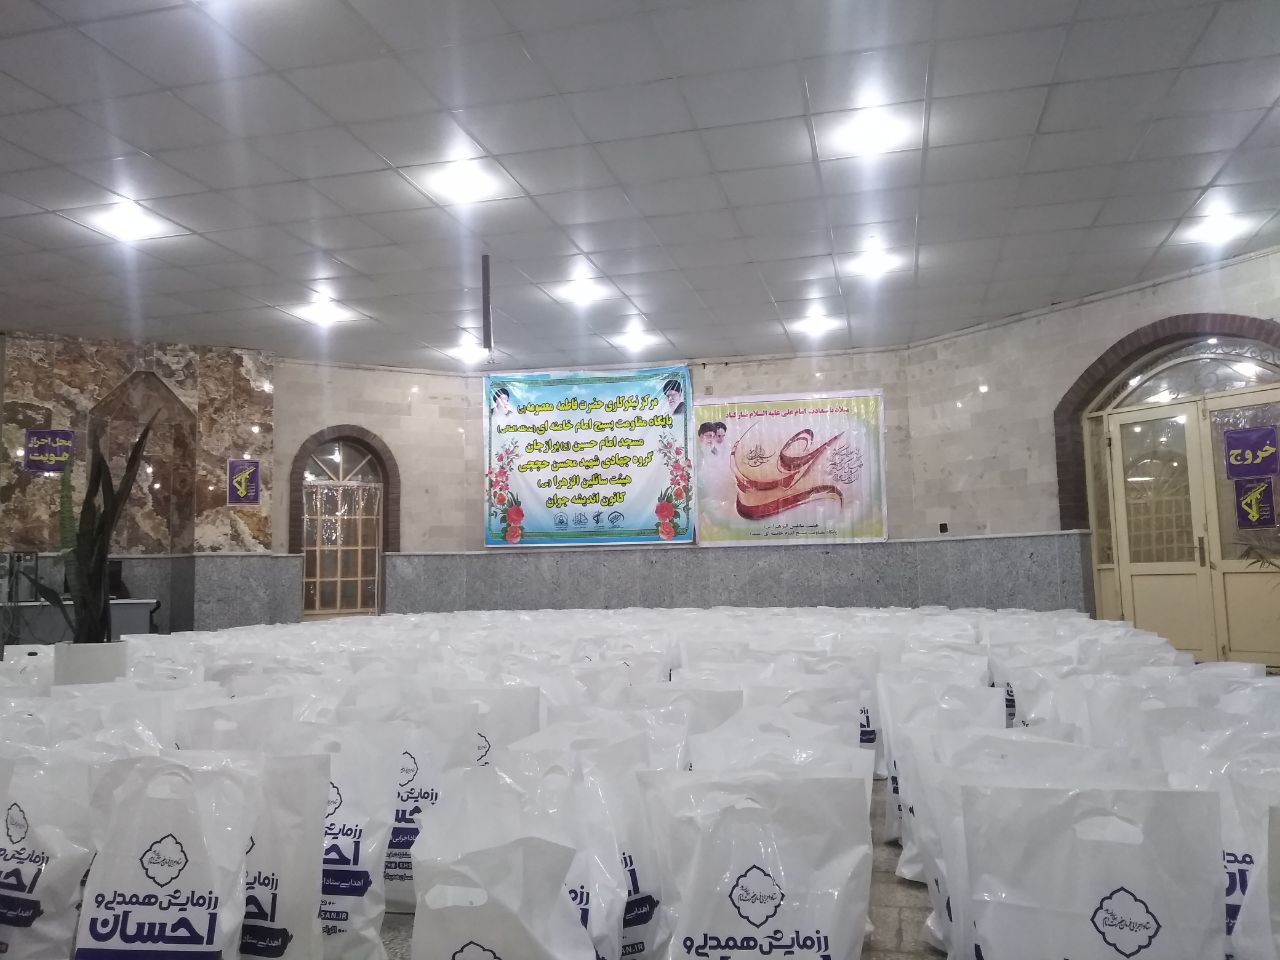 طرح بزرگ طبخ و توزيع 10 هزار پرس غذاي گرم در روز عيد غدير به همت کانون فرهنگي هنري انديشه